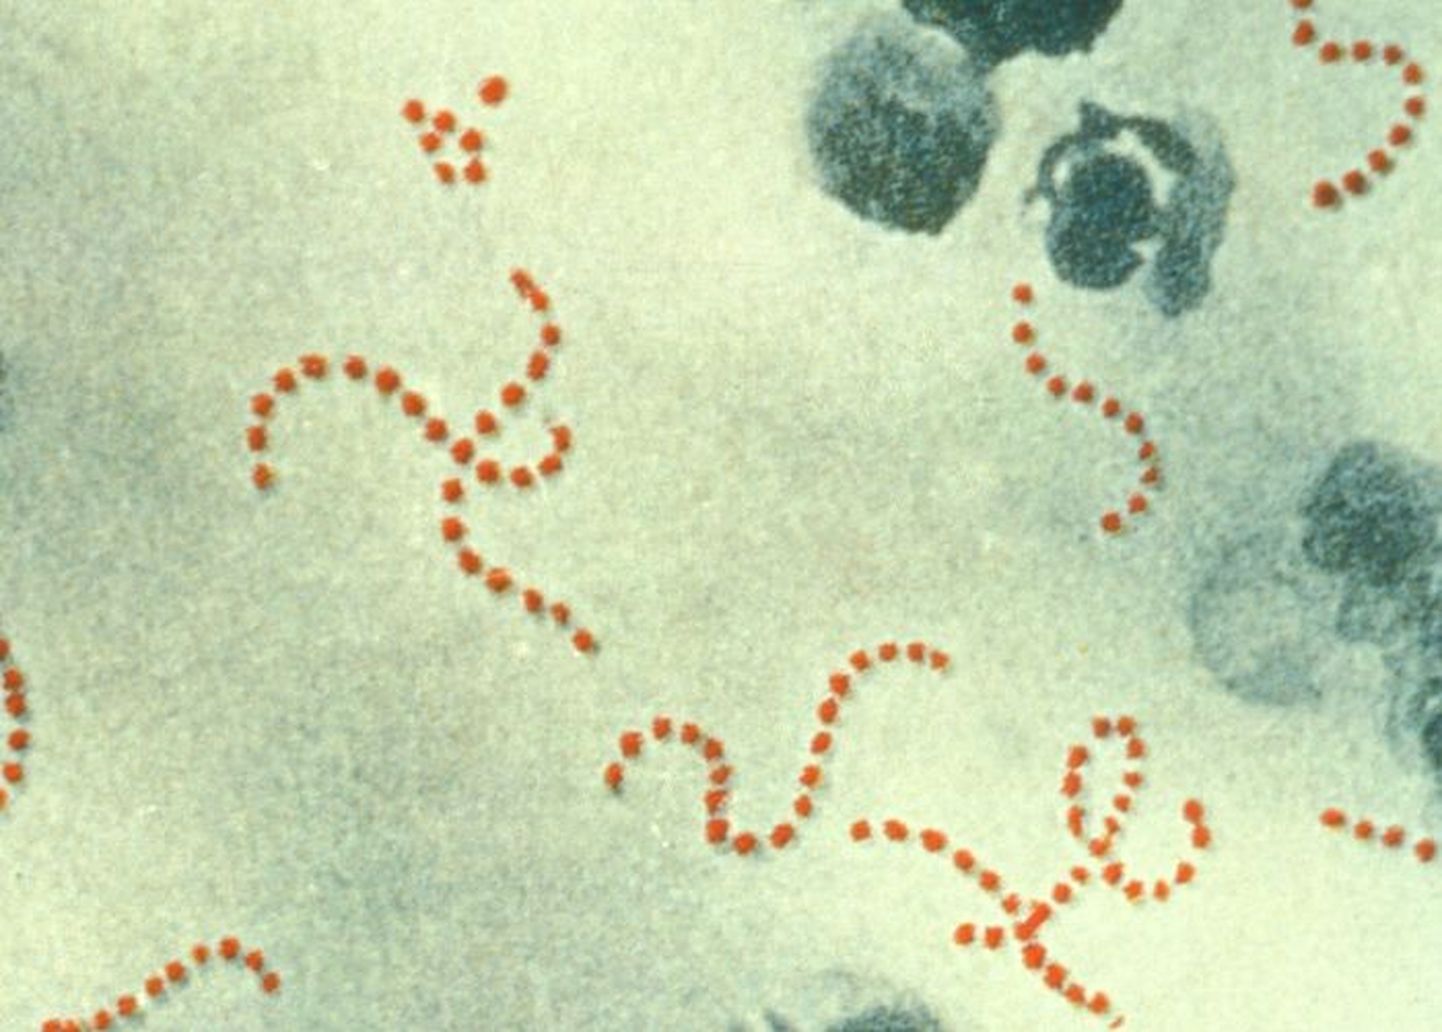 Streptococcus pyogenes on teatud tingimustel tuntud ka kui lihasööja streptokokk ehk lihasööjabakter.